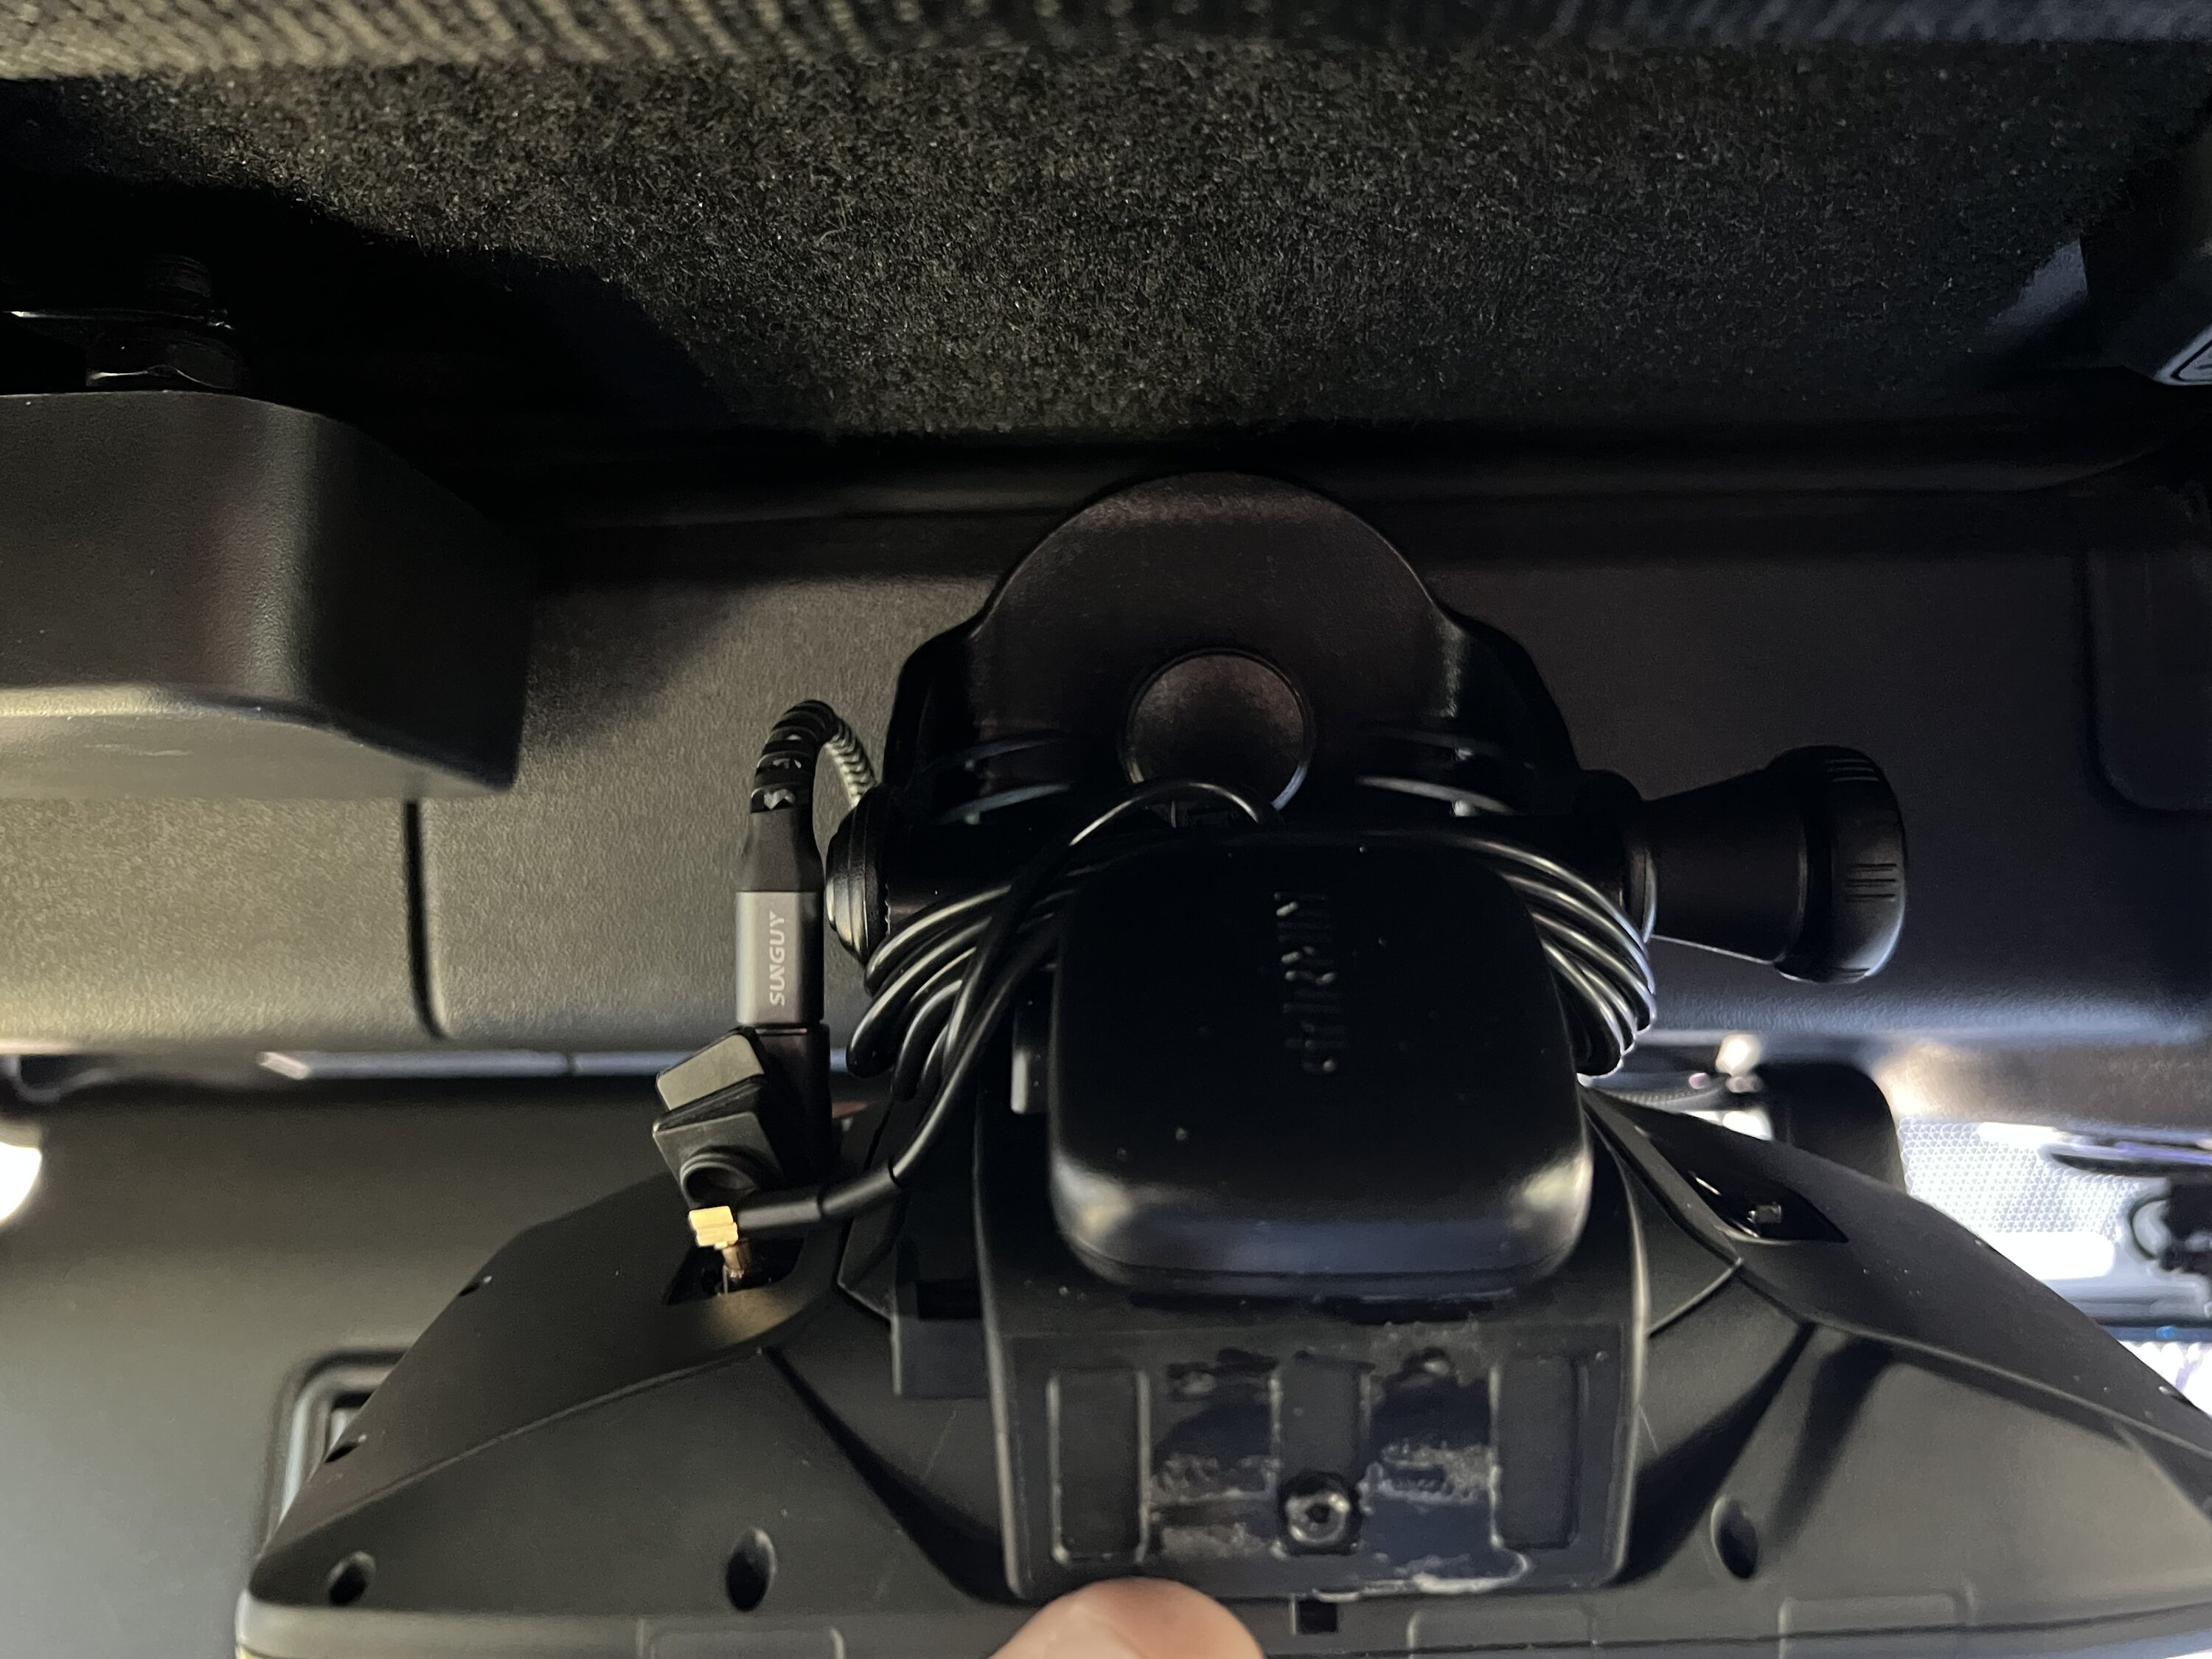 Ford Bronco Garmin 276cx GPS Install A9061309-3DE6-42A3-A2FE-E24C9E632C2C